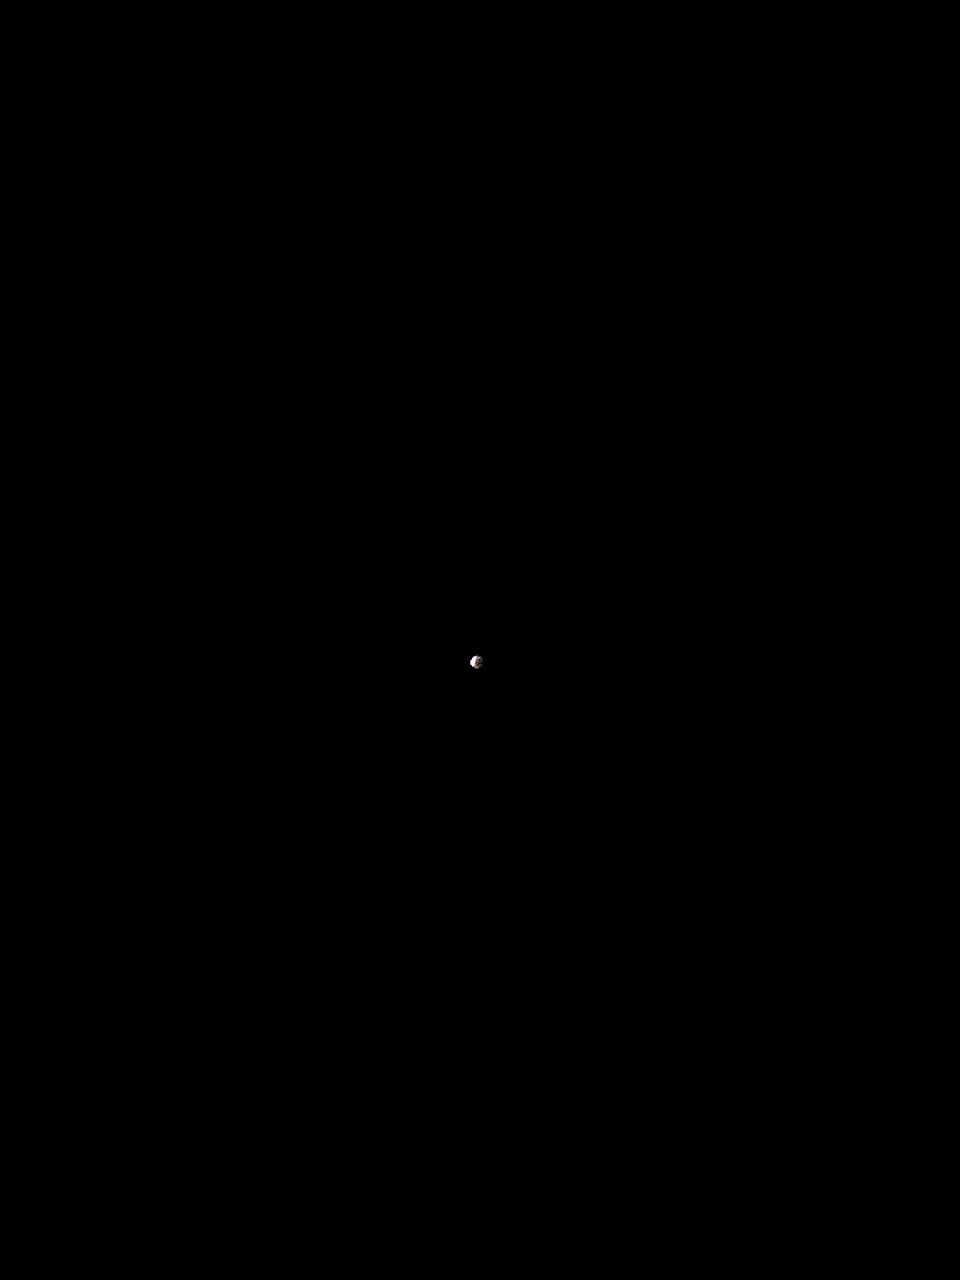 [Lunar+eclipse+04-03-07.jpg]